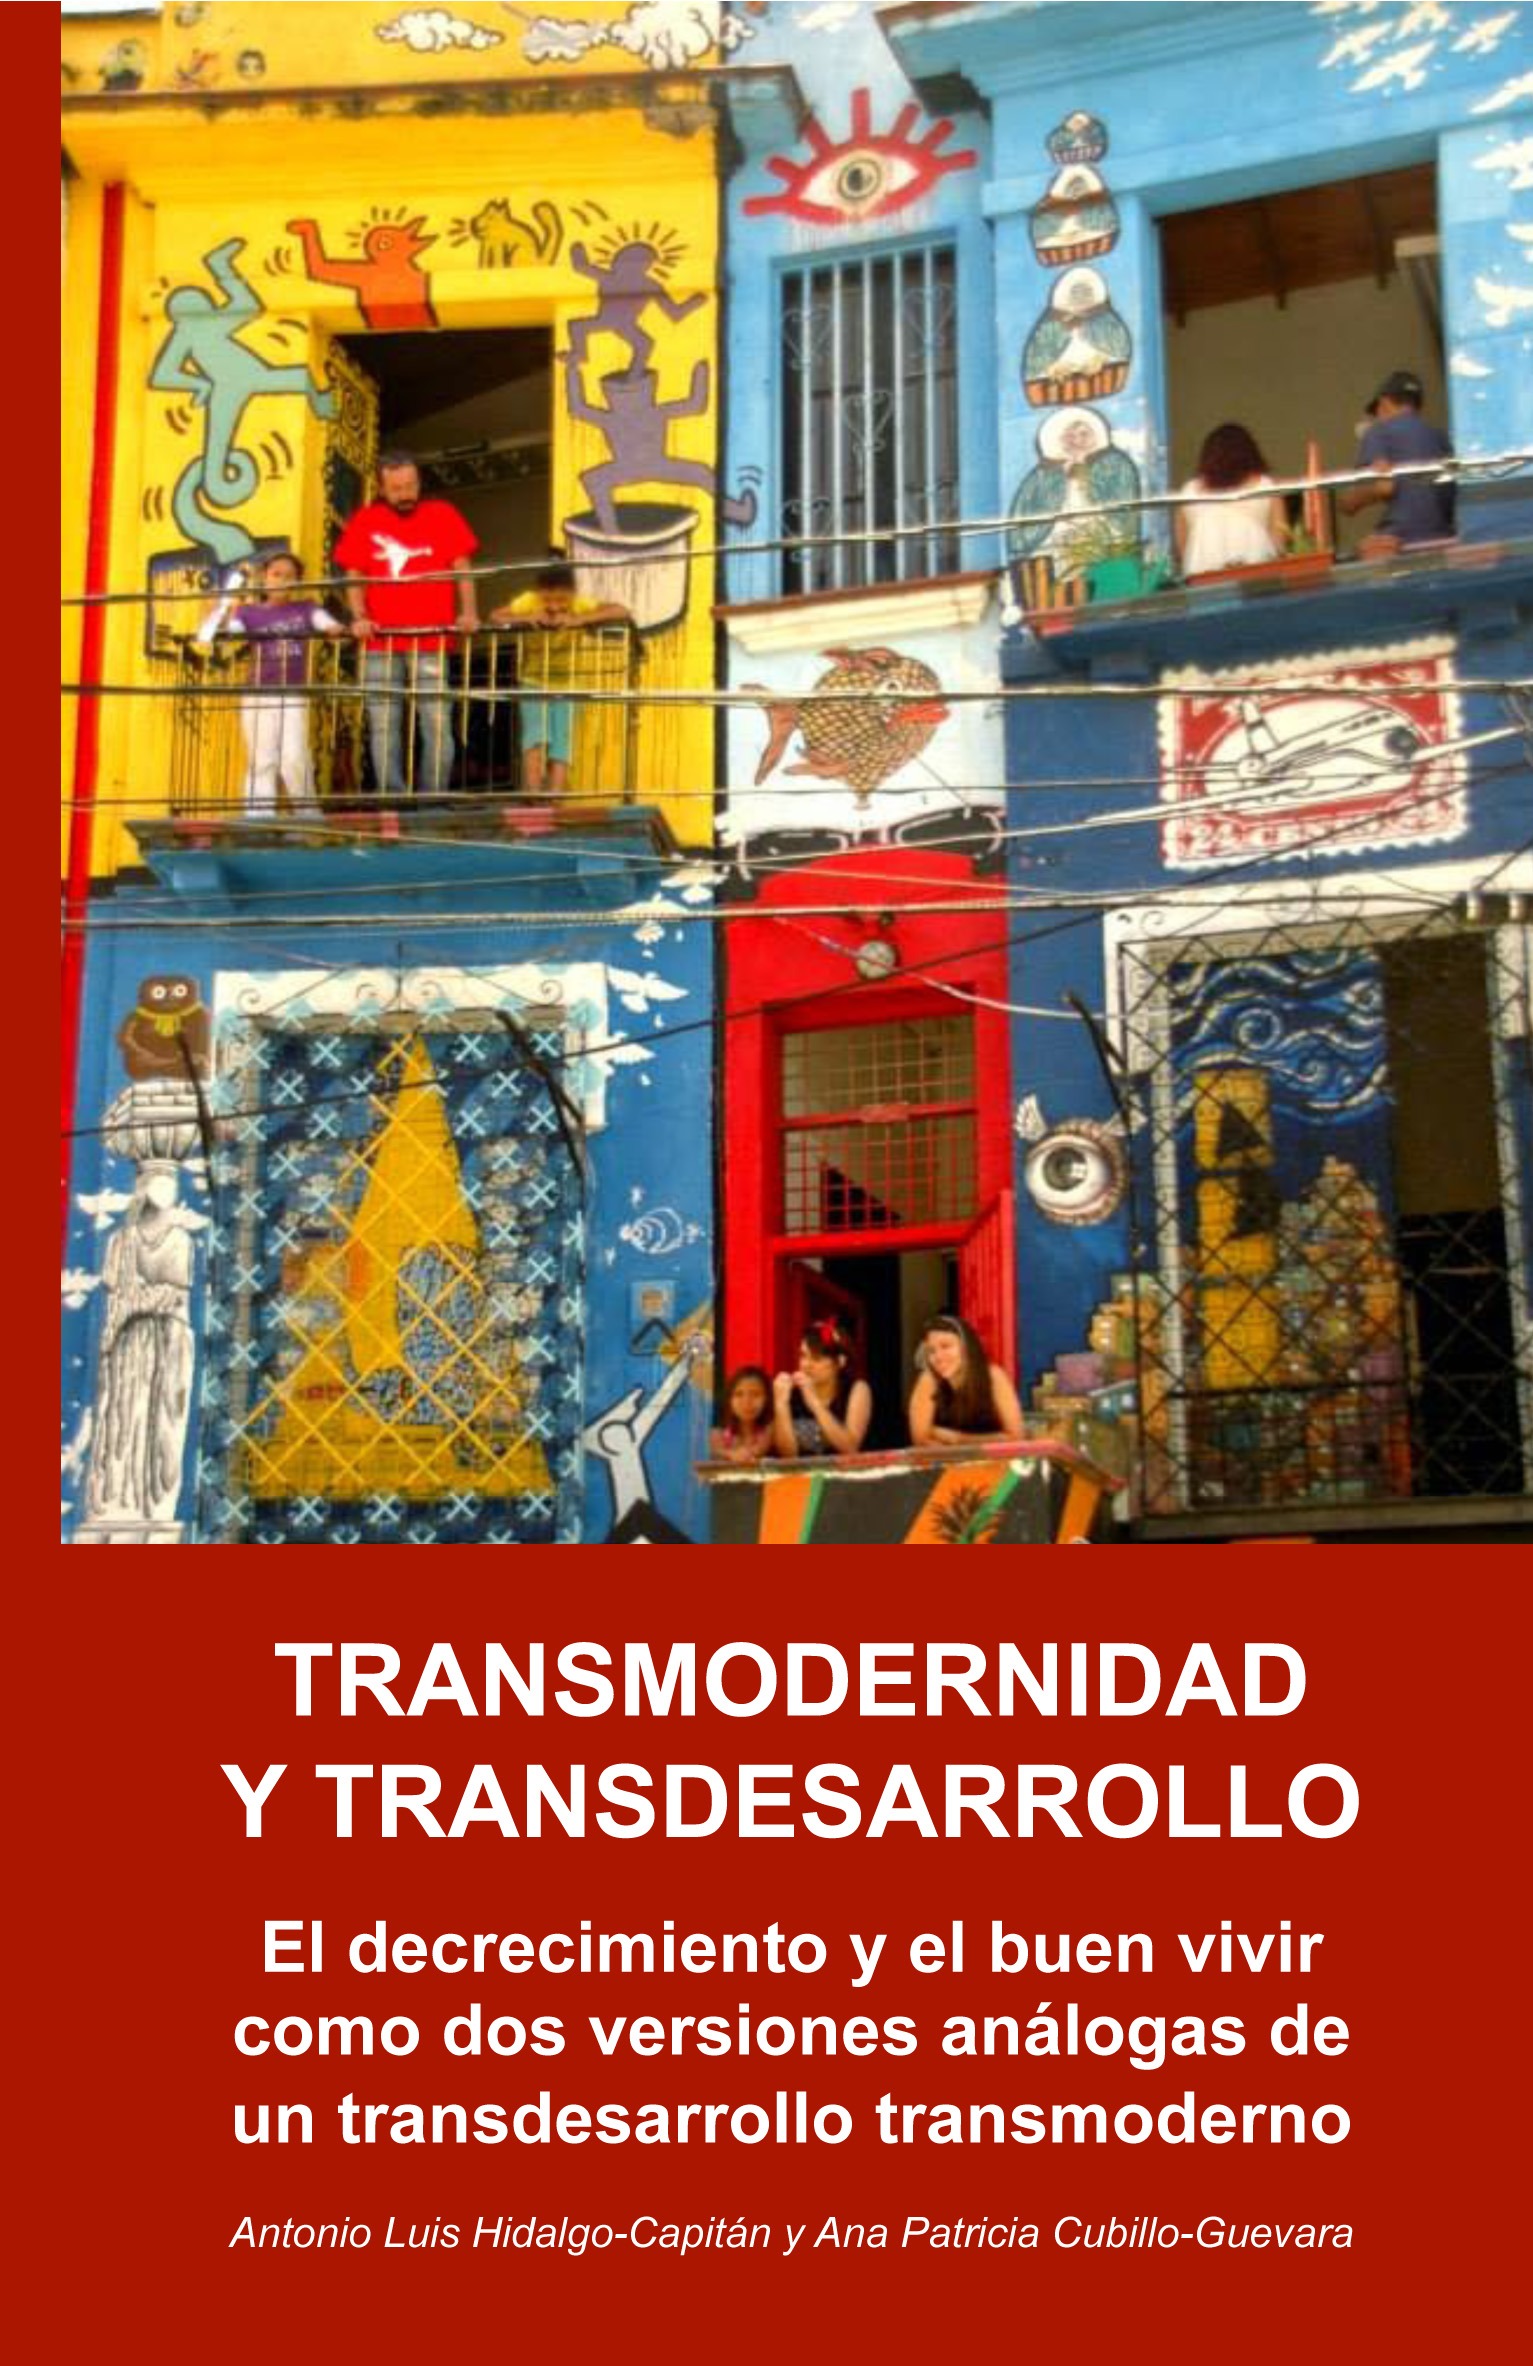 Ya disponible el libro "TRANSMODERNIDAD Y TRANSDESARROLLO"